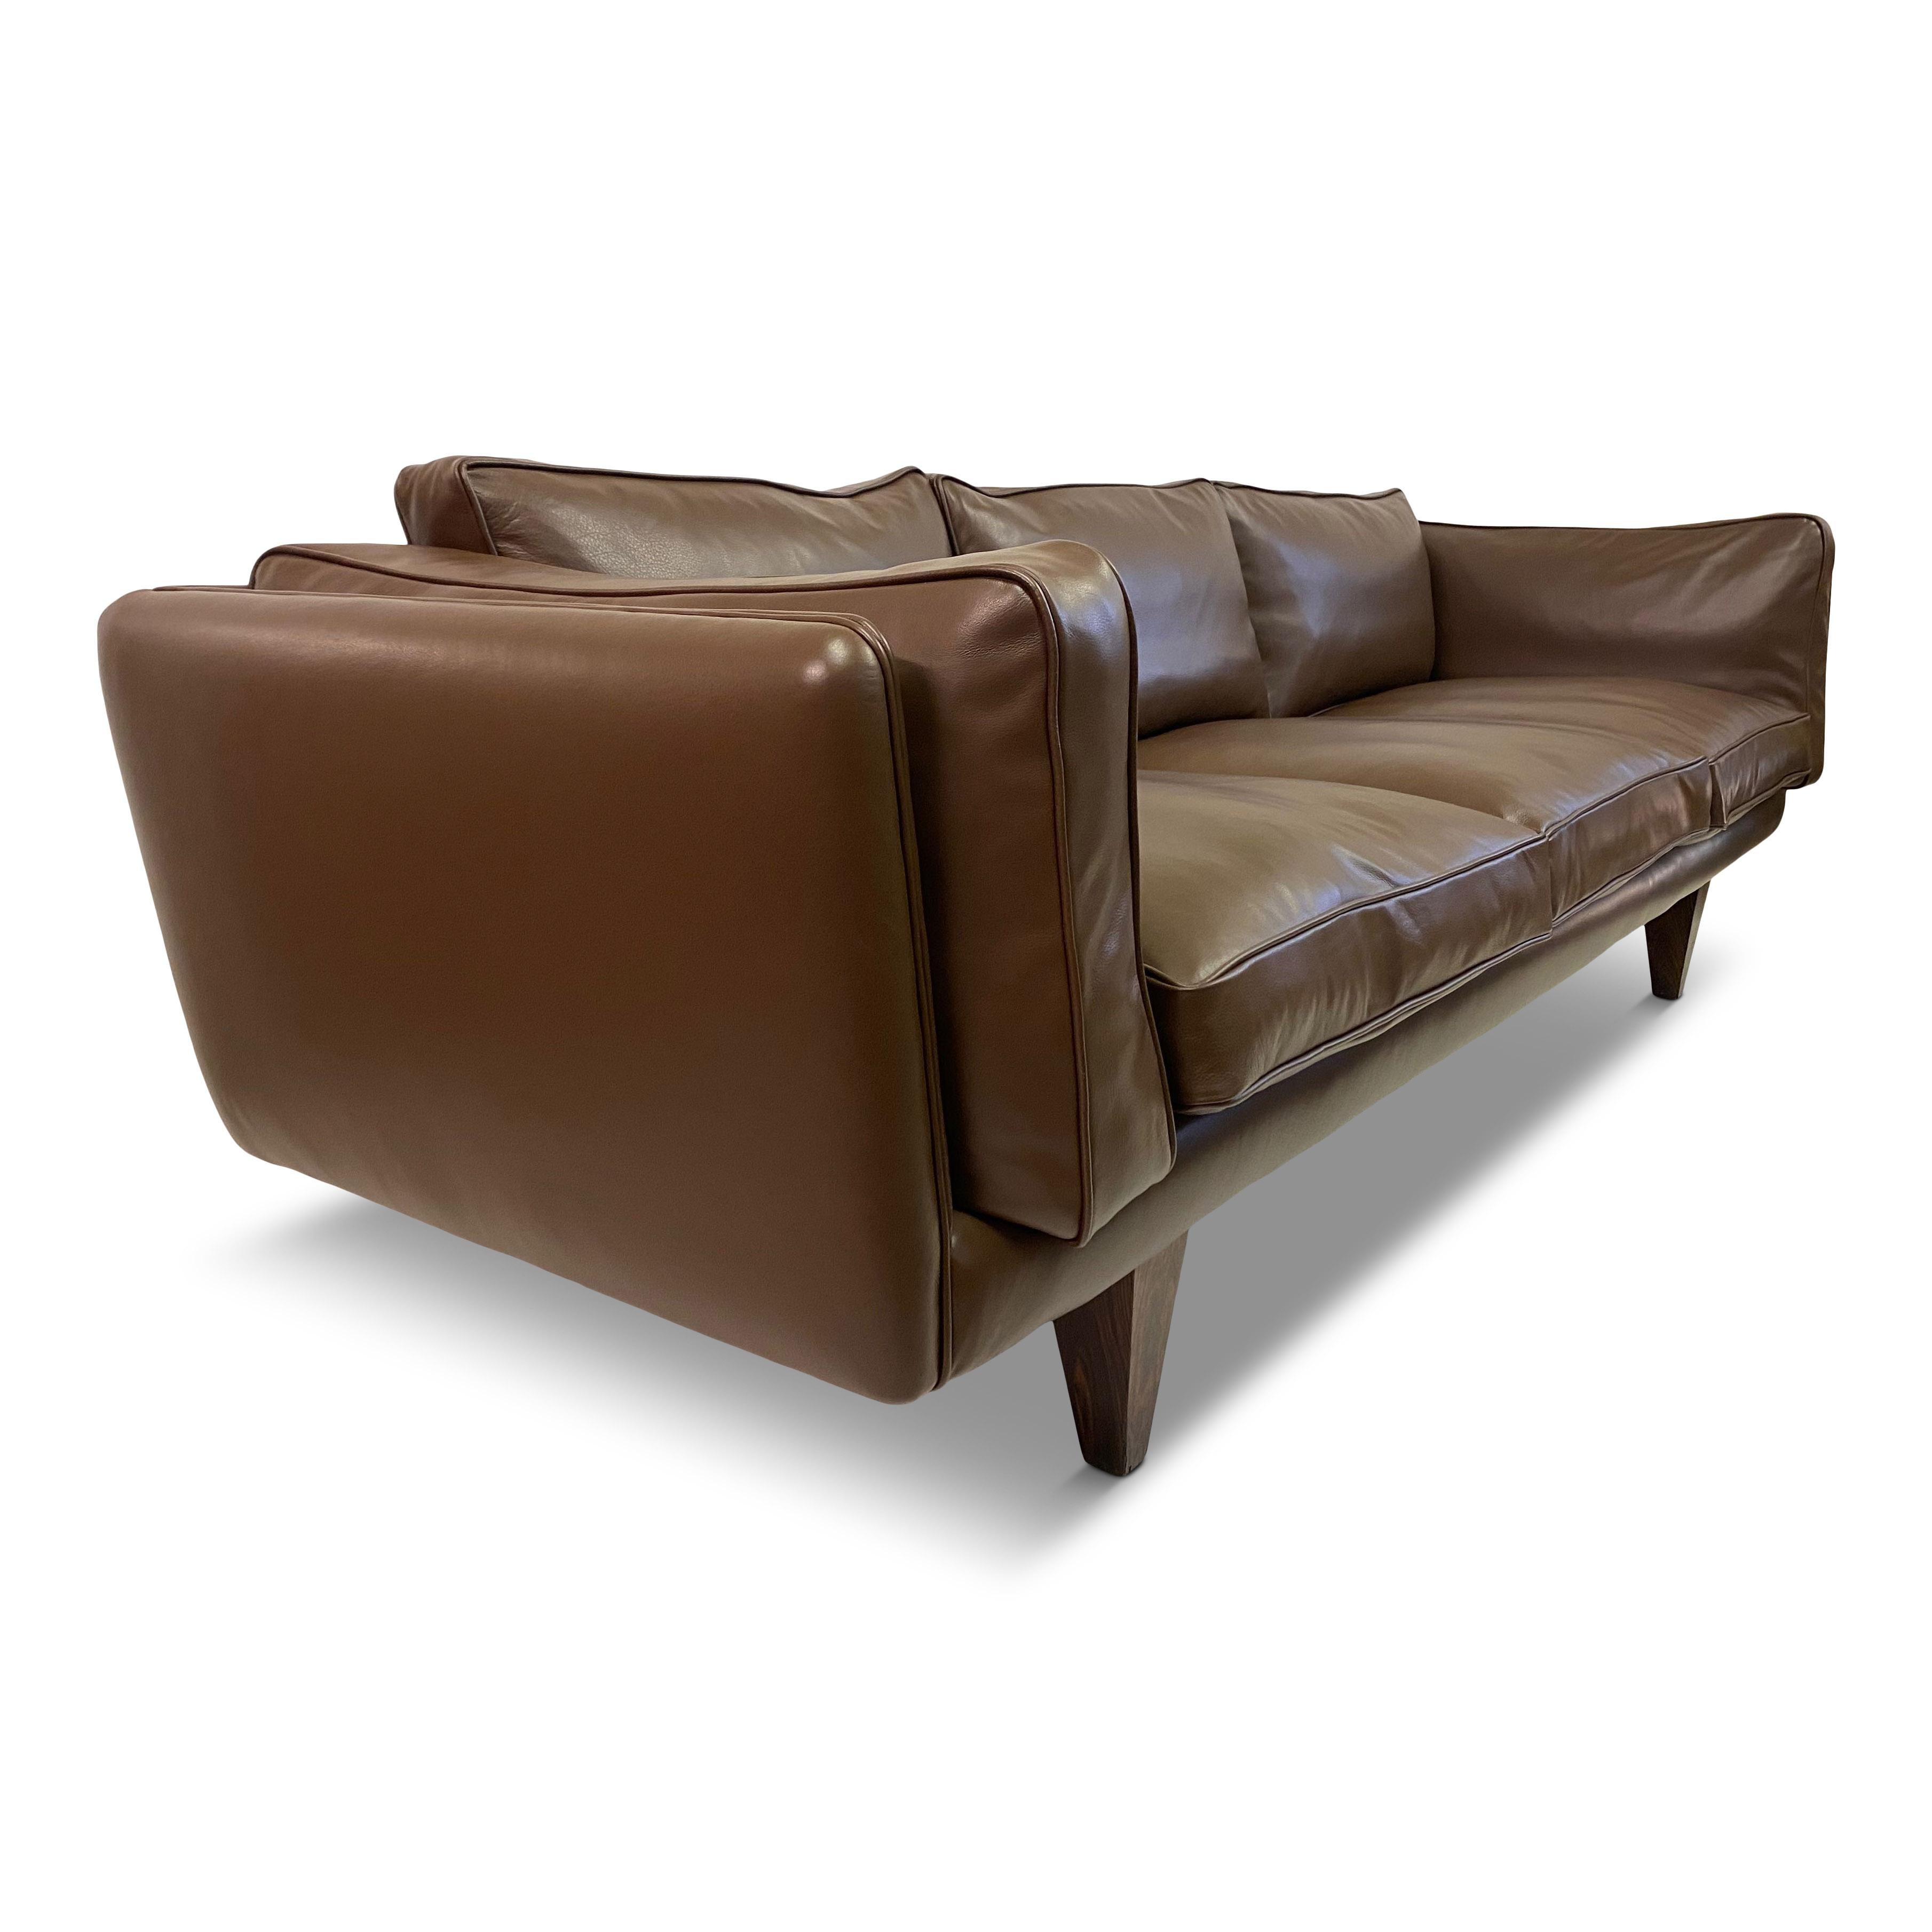 1960s Danish V11 Sofa By Illum WIkkelso for Holger Christiansen in Brown Leather 4